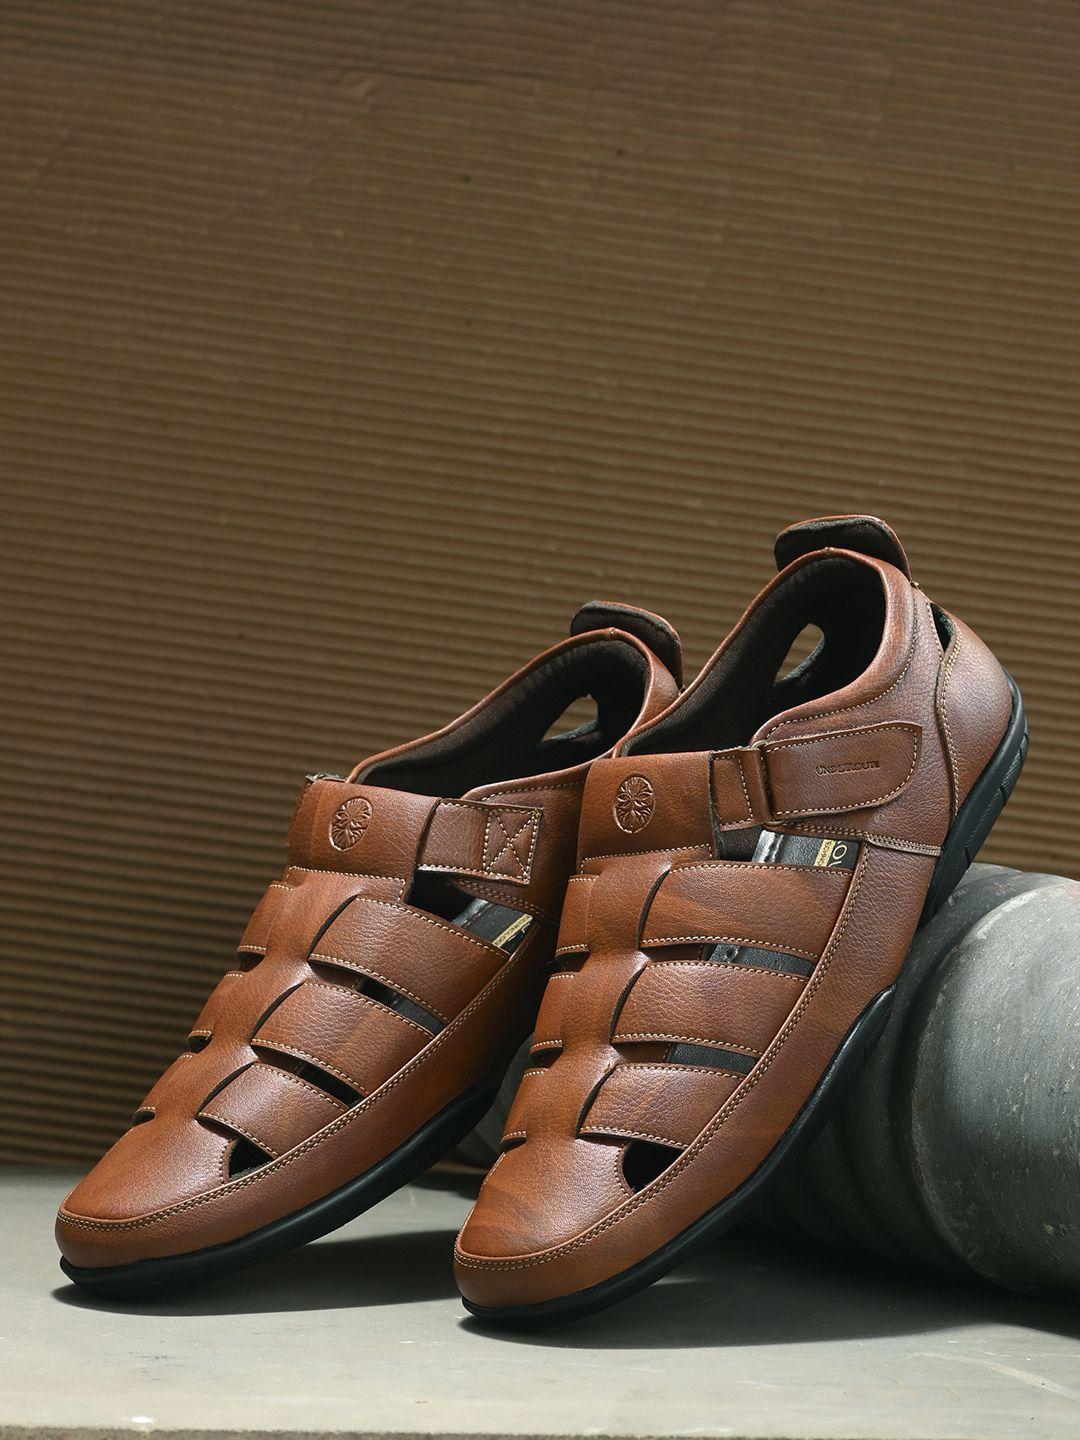 underroute-men-tan-leather-shoe-style-sandals